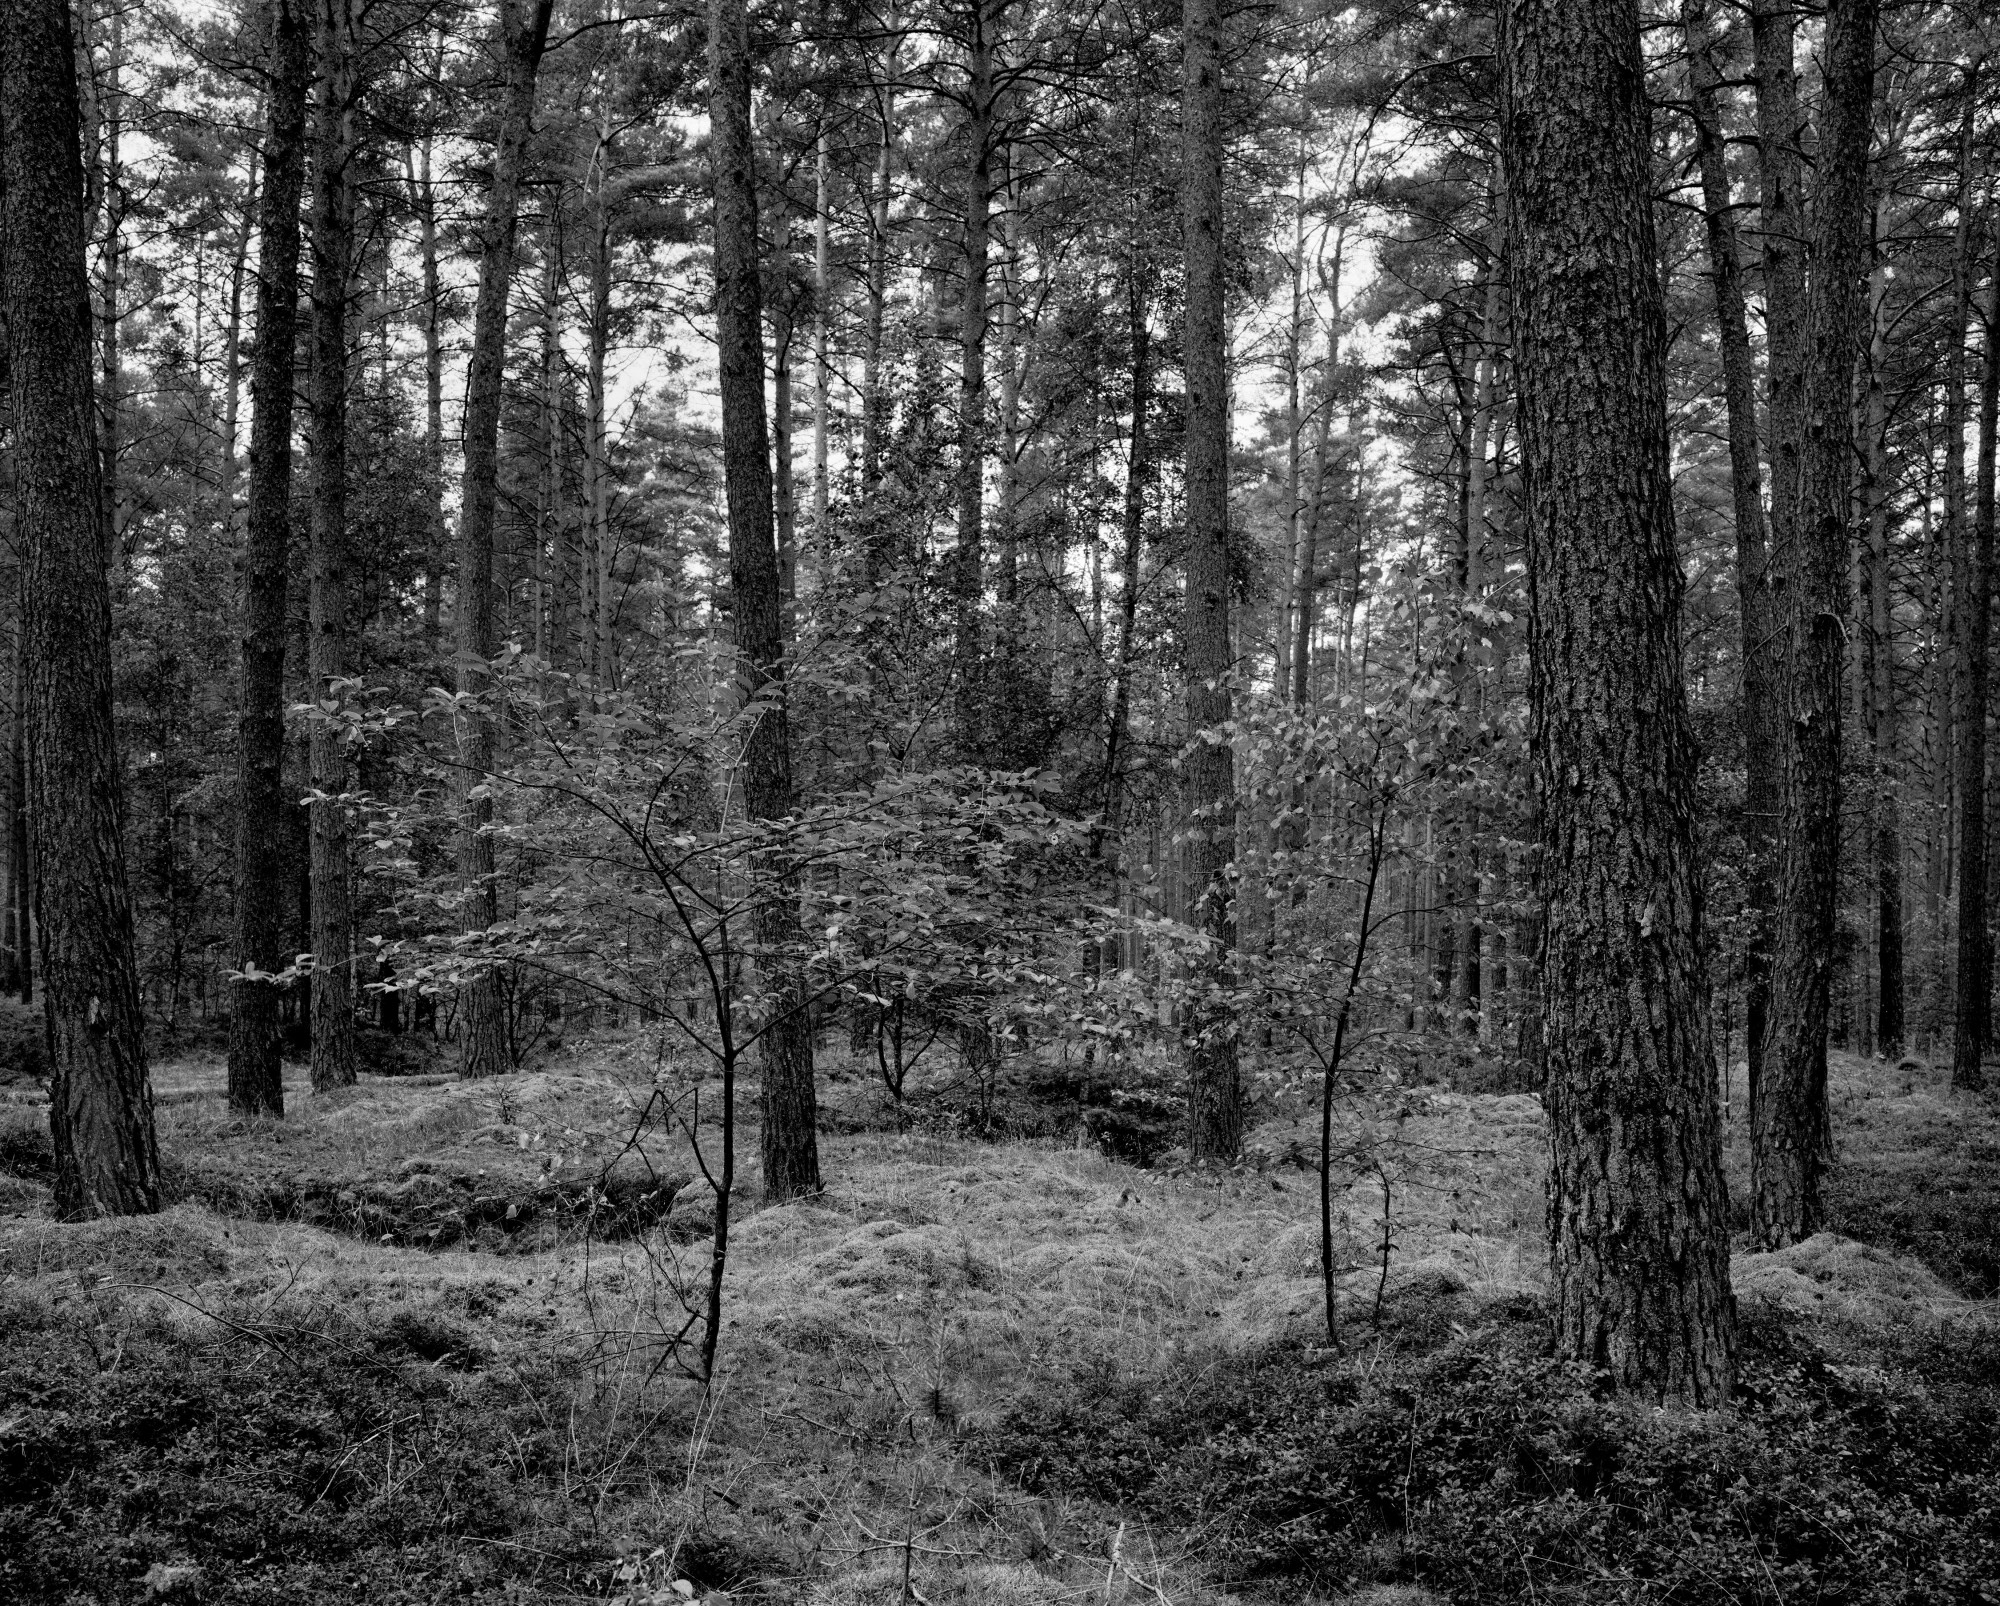 Wald mit Moosboden, Krienke, 2020